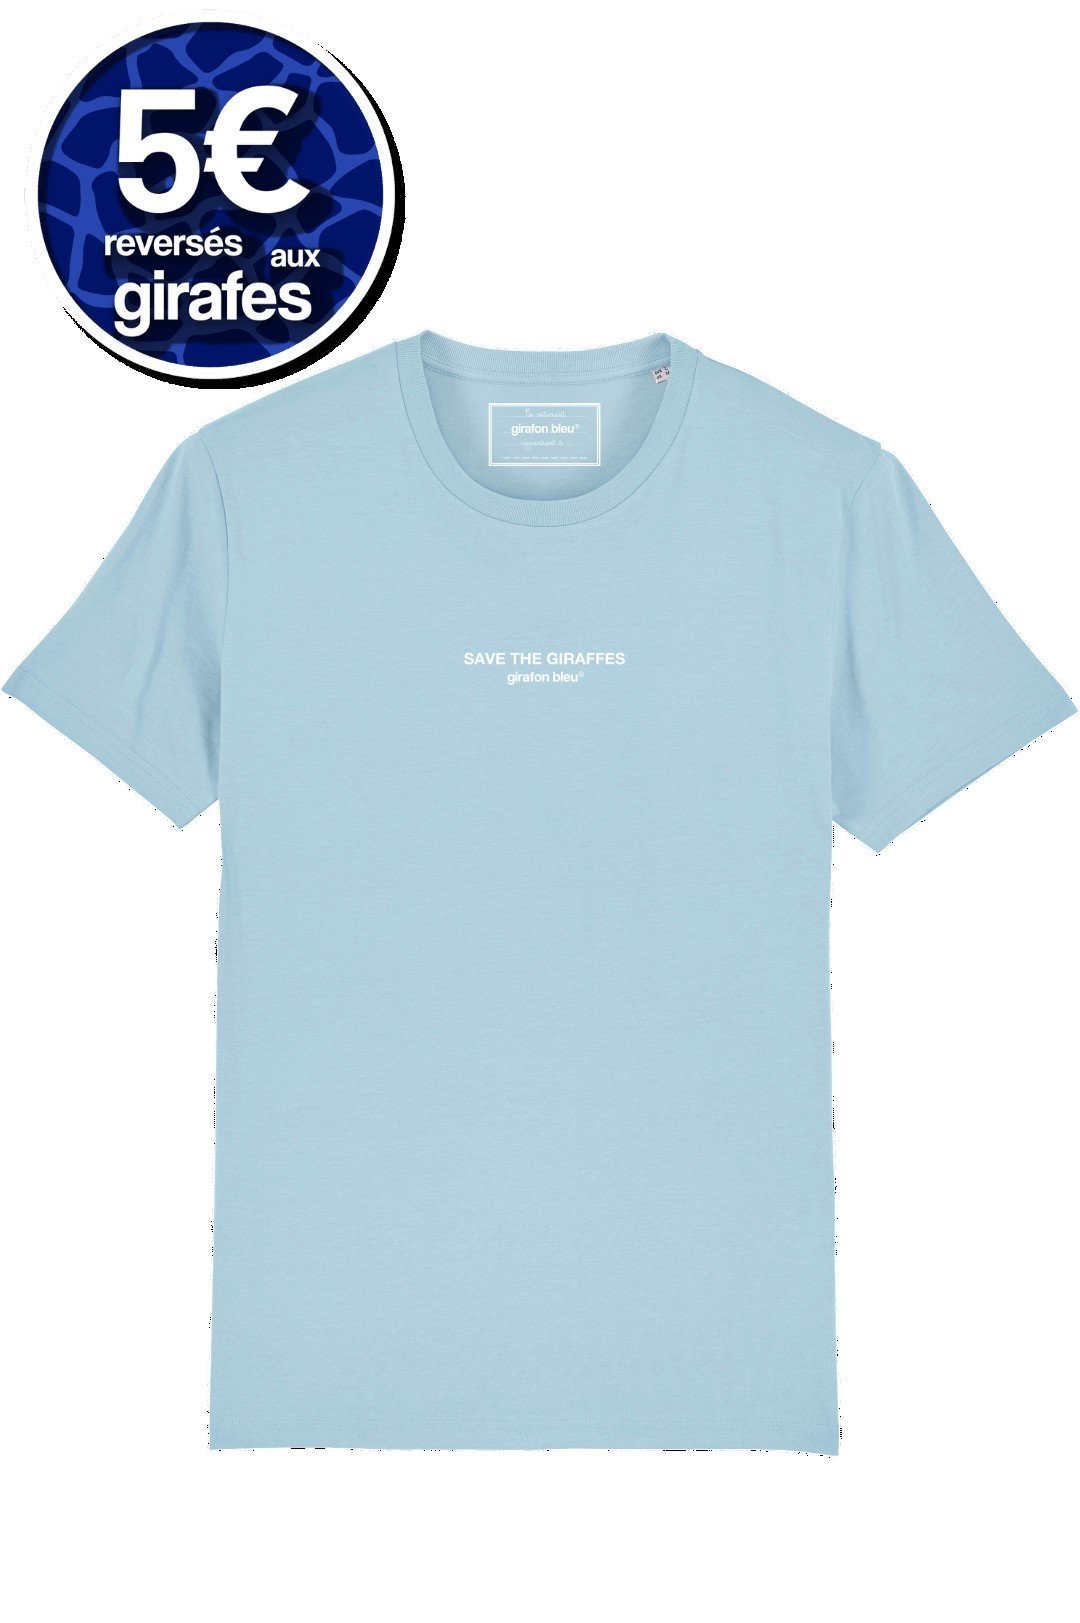 T-shirt coton biologique - Save The Giraffes - Bleu ciel - fairytale